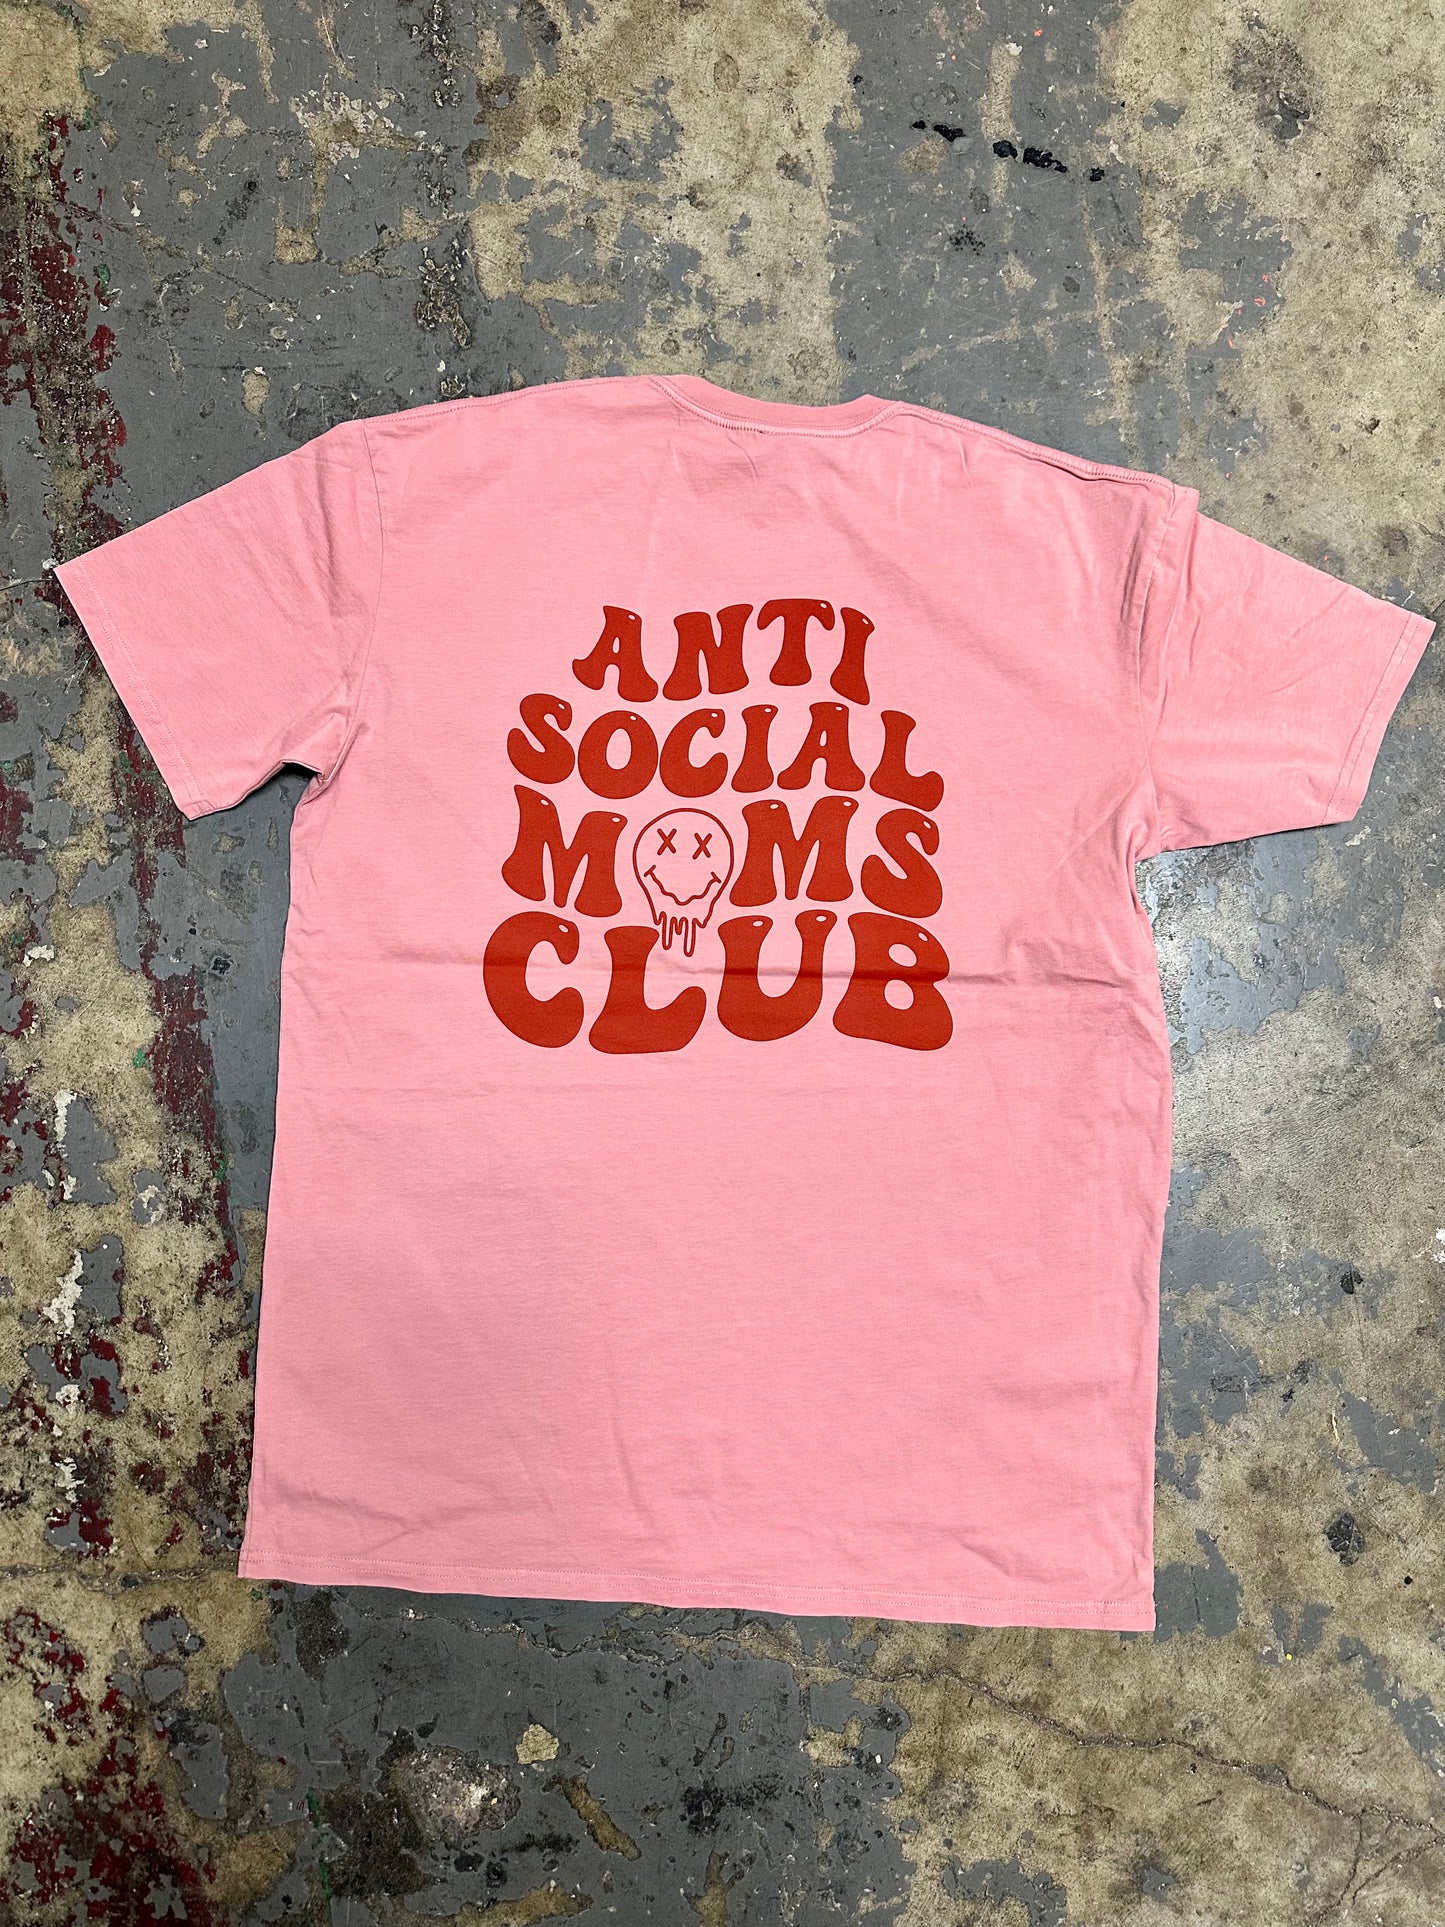 Anti-Social Moms Club